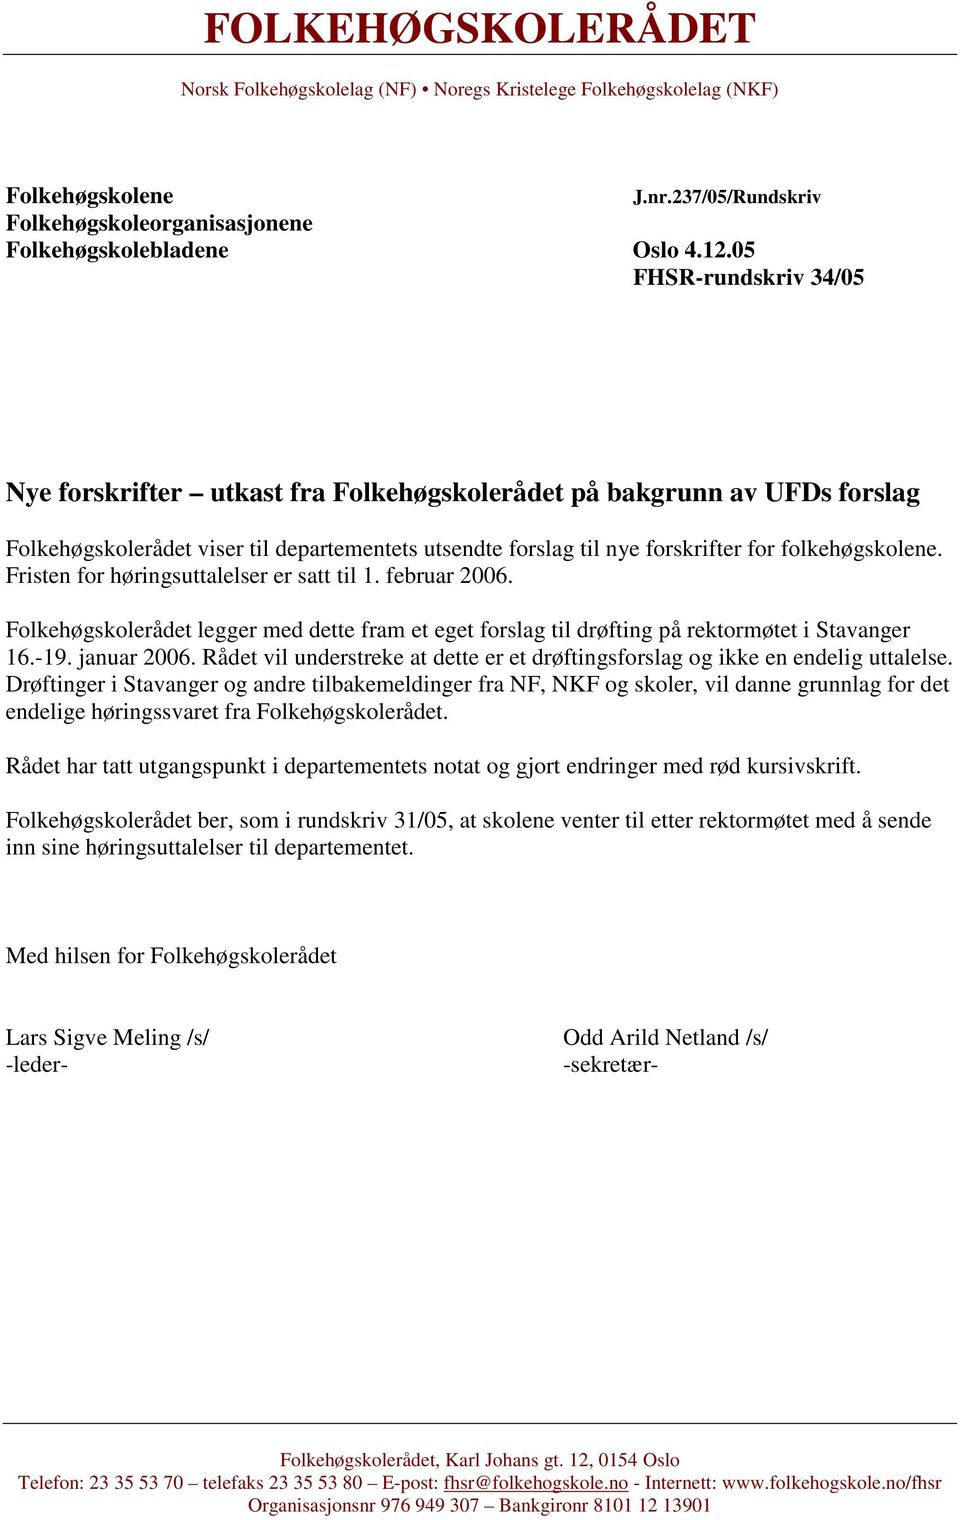 Fristen for høringsuttalelser er satt til 1. februar 2006. Folkehøgskolerådet legger med dette fram et eget forslag til drøfting på rektormøtet i Stavanger 16.-19. januar 2006.